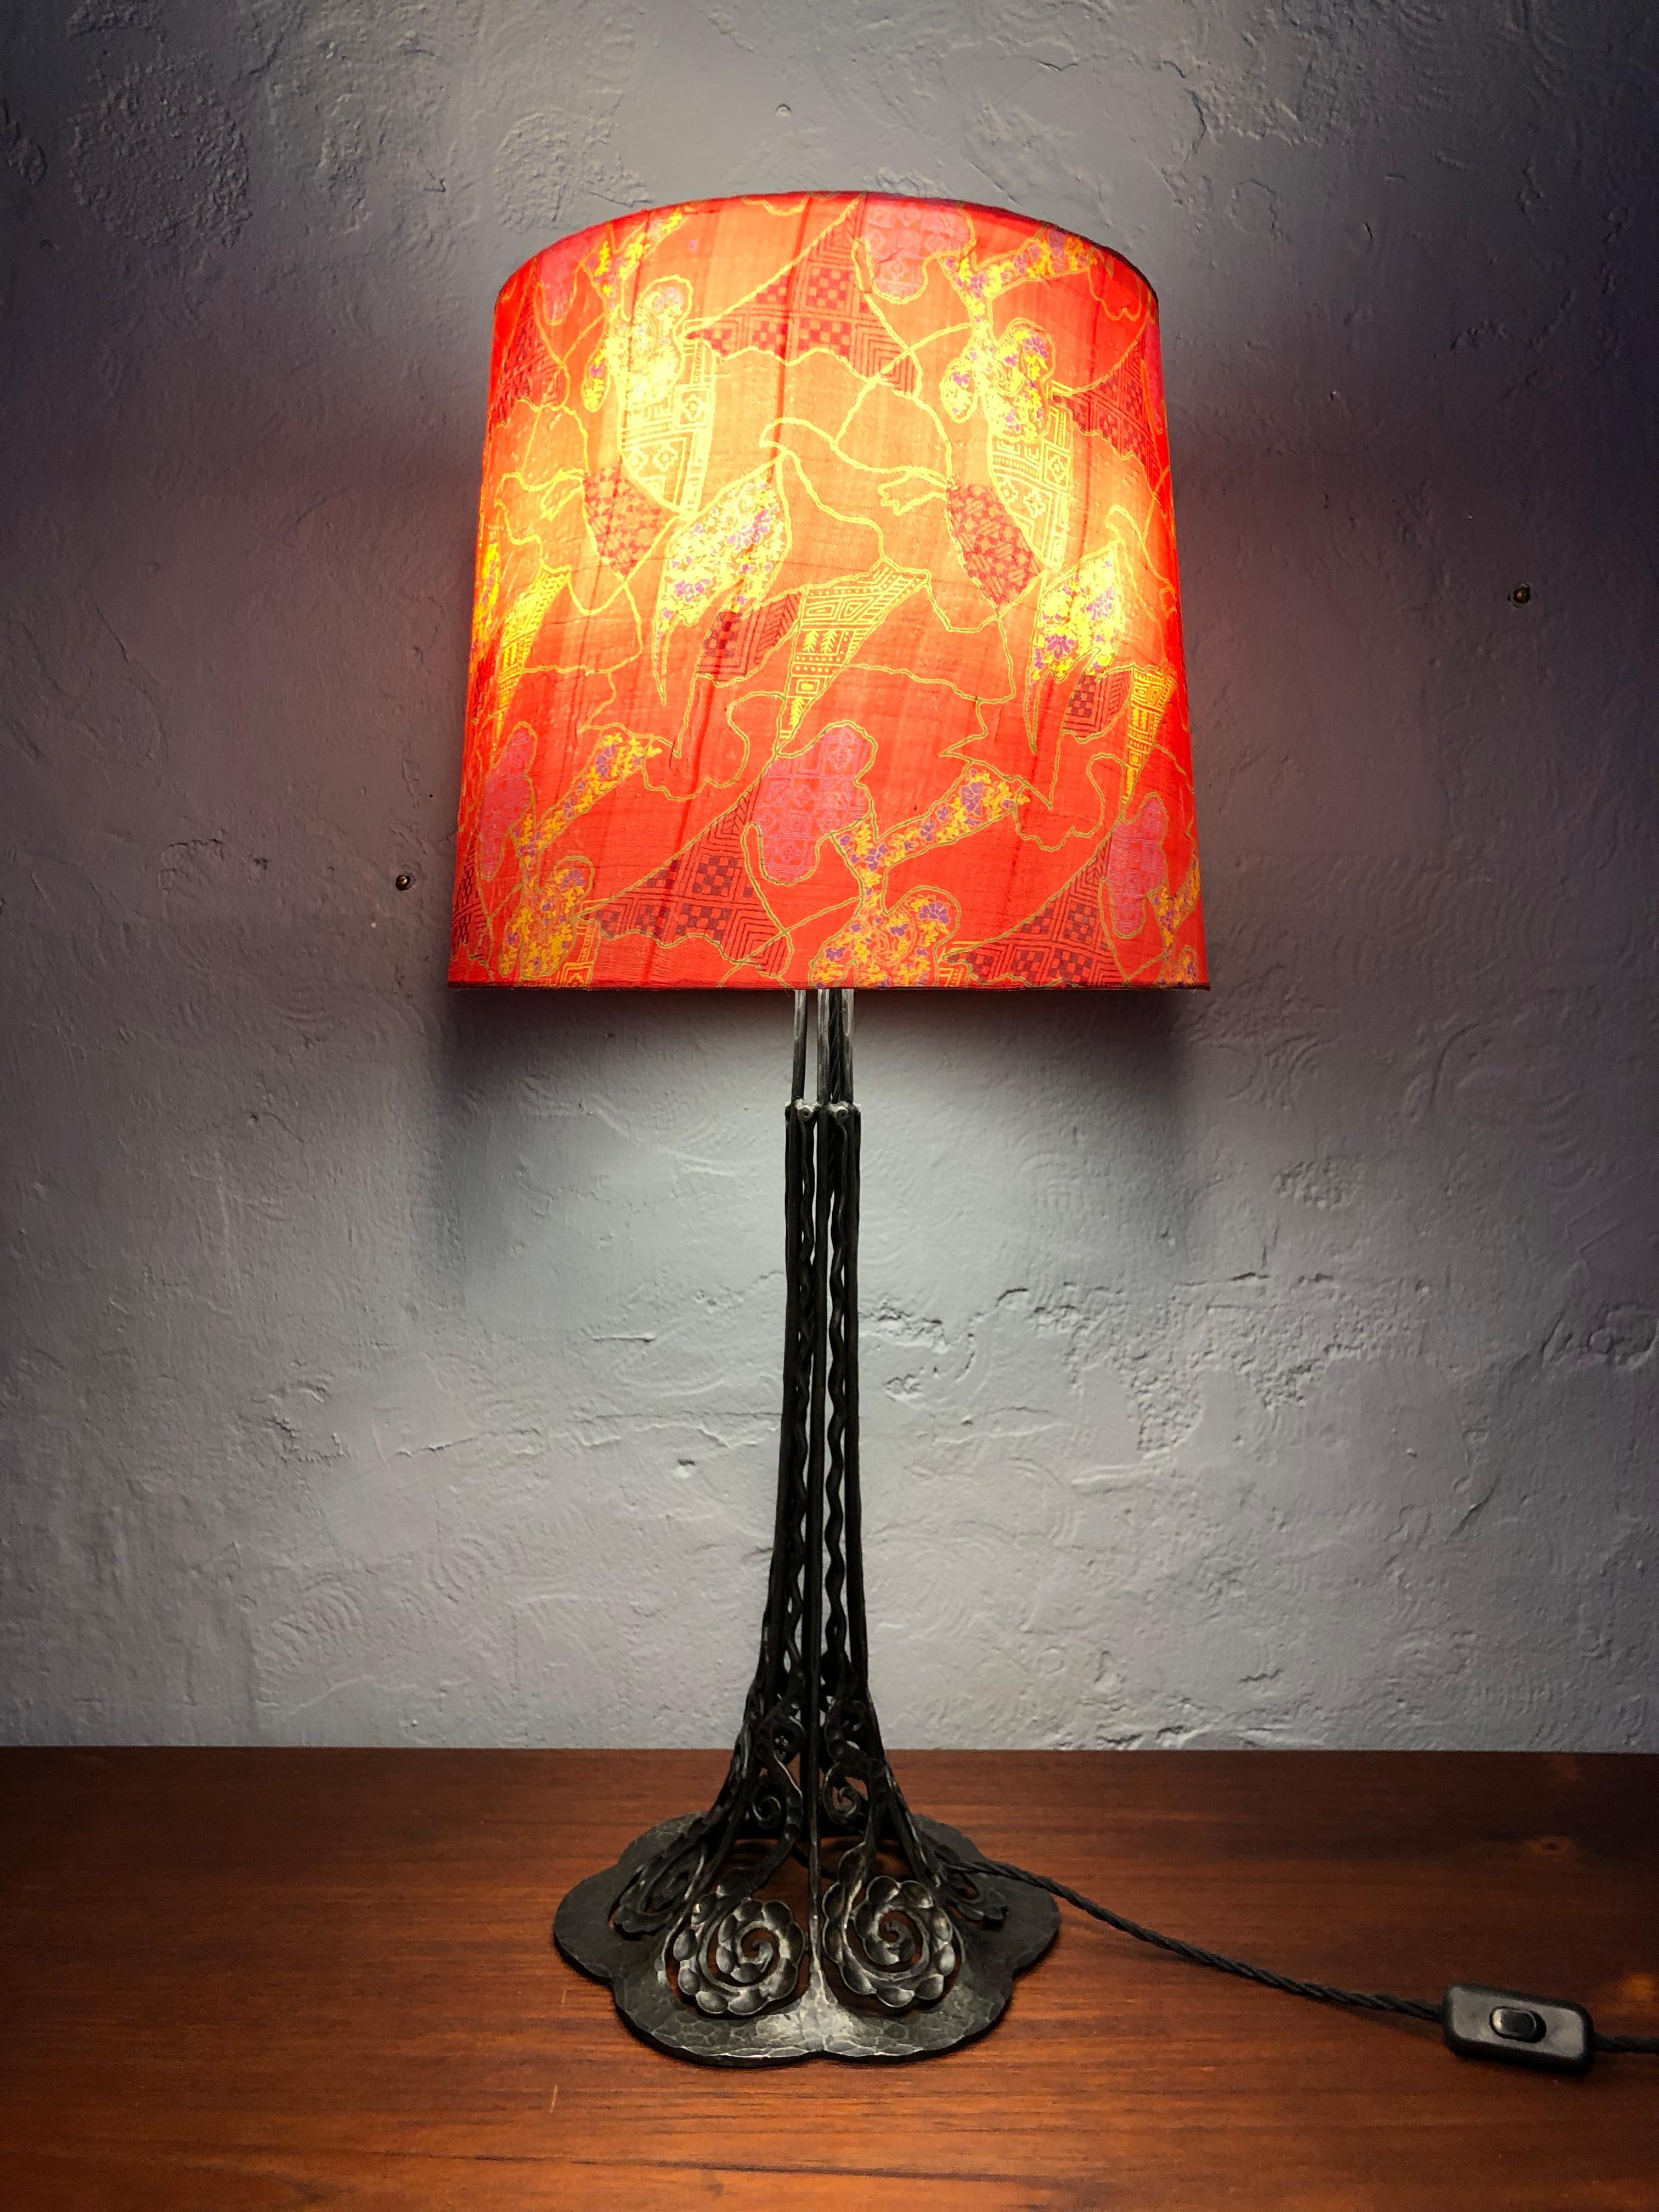 Lampe de table ancienne en fer forgé datant du début des années 1900, fabriquée par des artisans. 
De grande taille.
Magnifique travail du métal.
Toujours avec les 3 supports de lampe d'origine en laiton et céramique et avec les interrupteurs